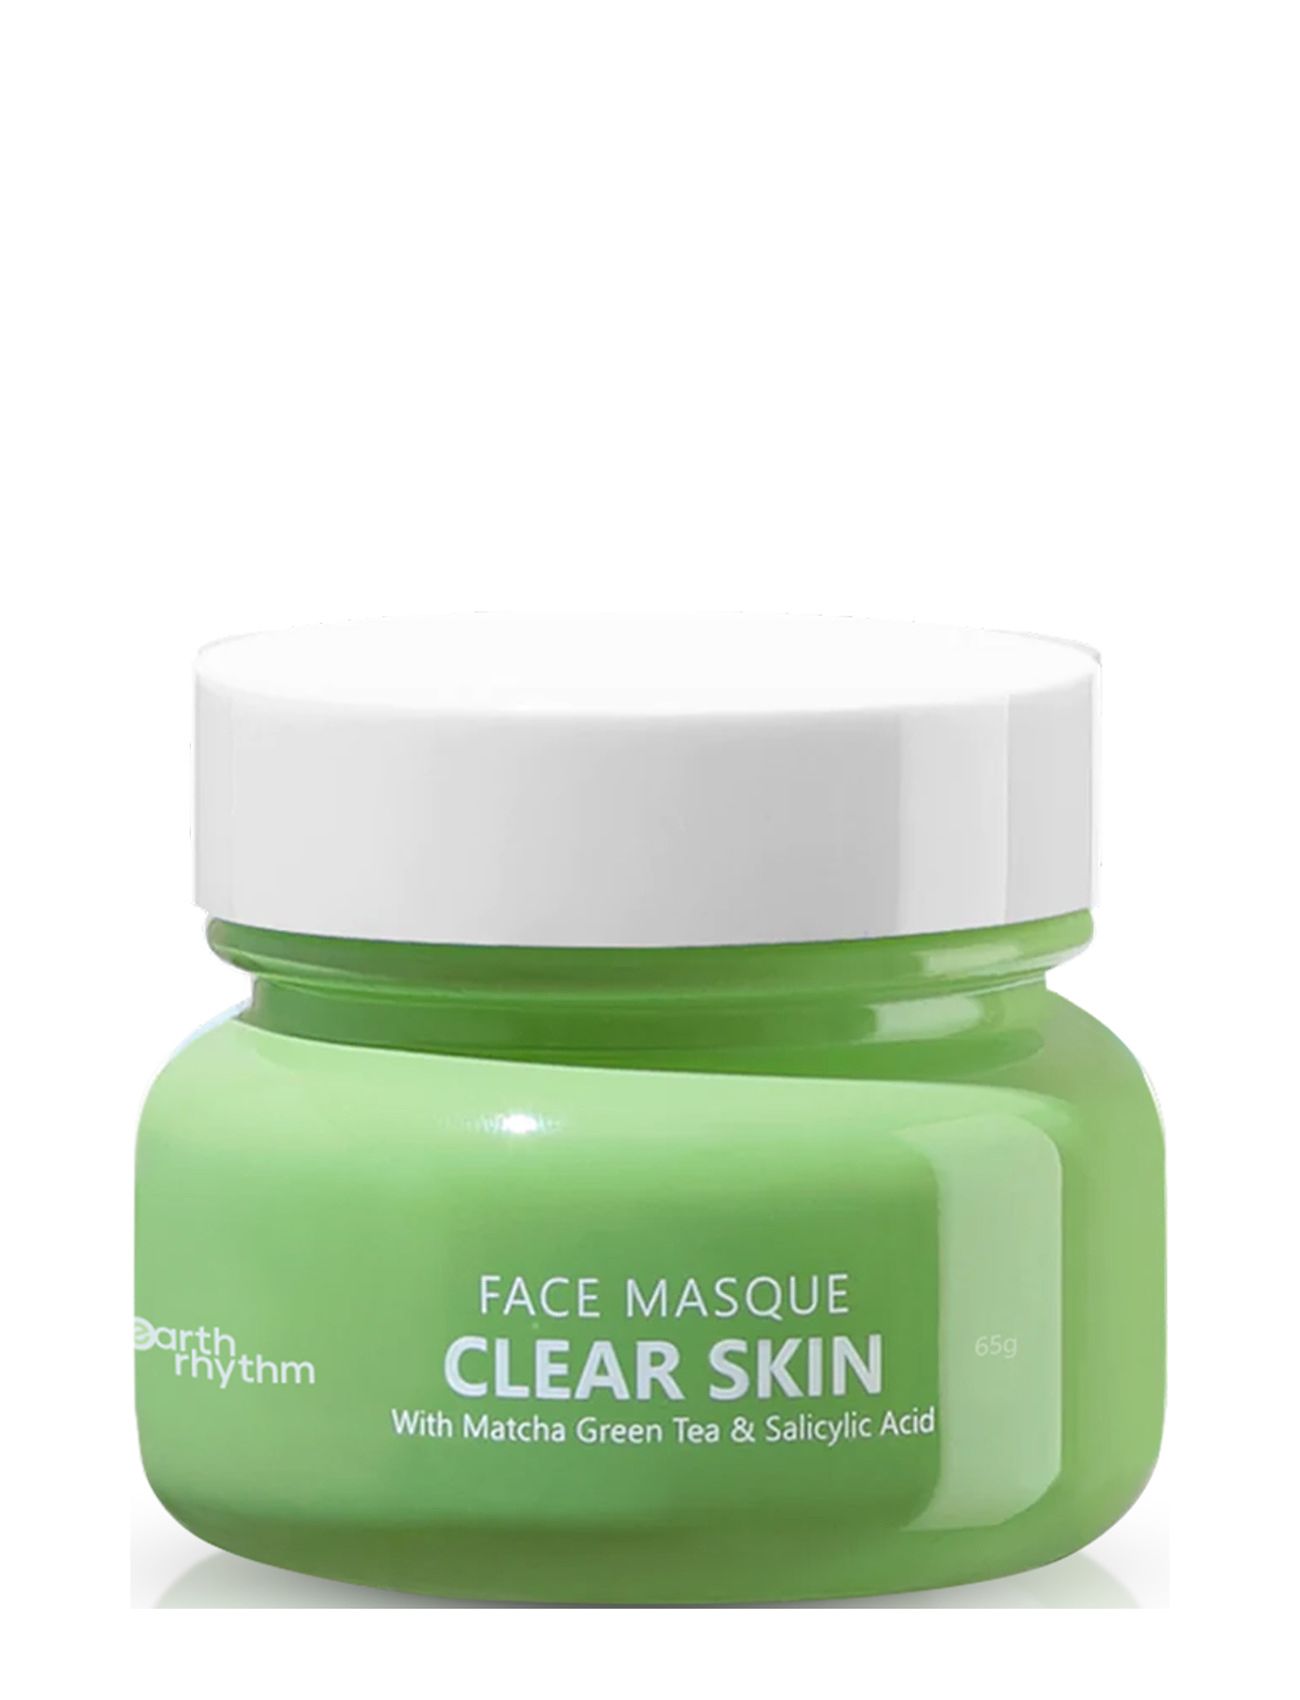 "Clear Skin Face Masque With Matcha Green Tea & 2% Salicylic Acid Beauty Women Skin Care Face Face Masks Detox Mask Green Earth Rhythm"